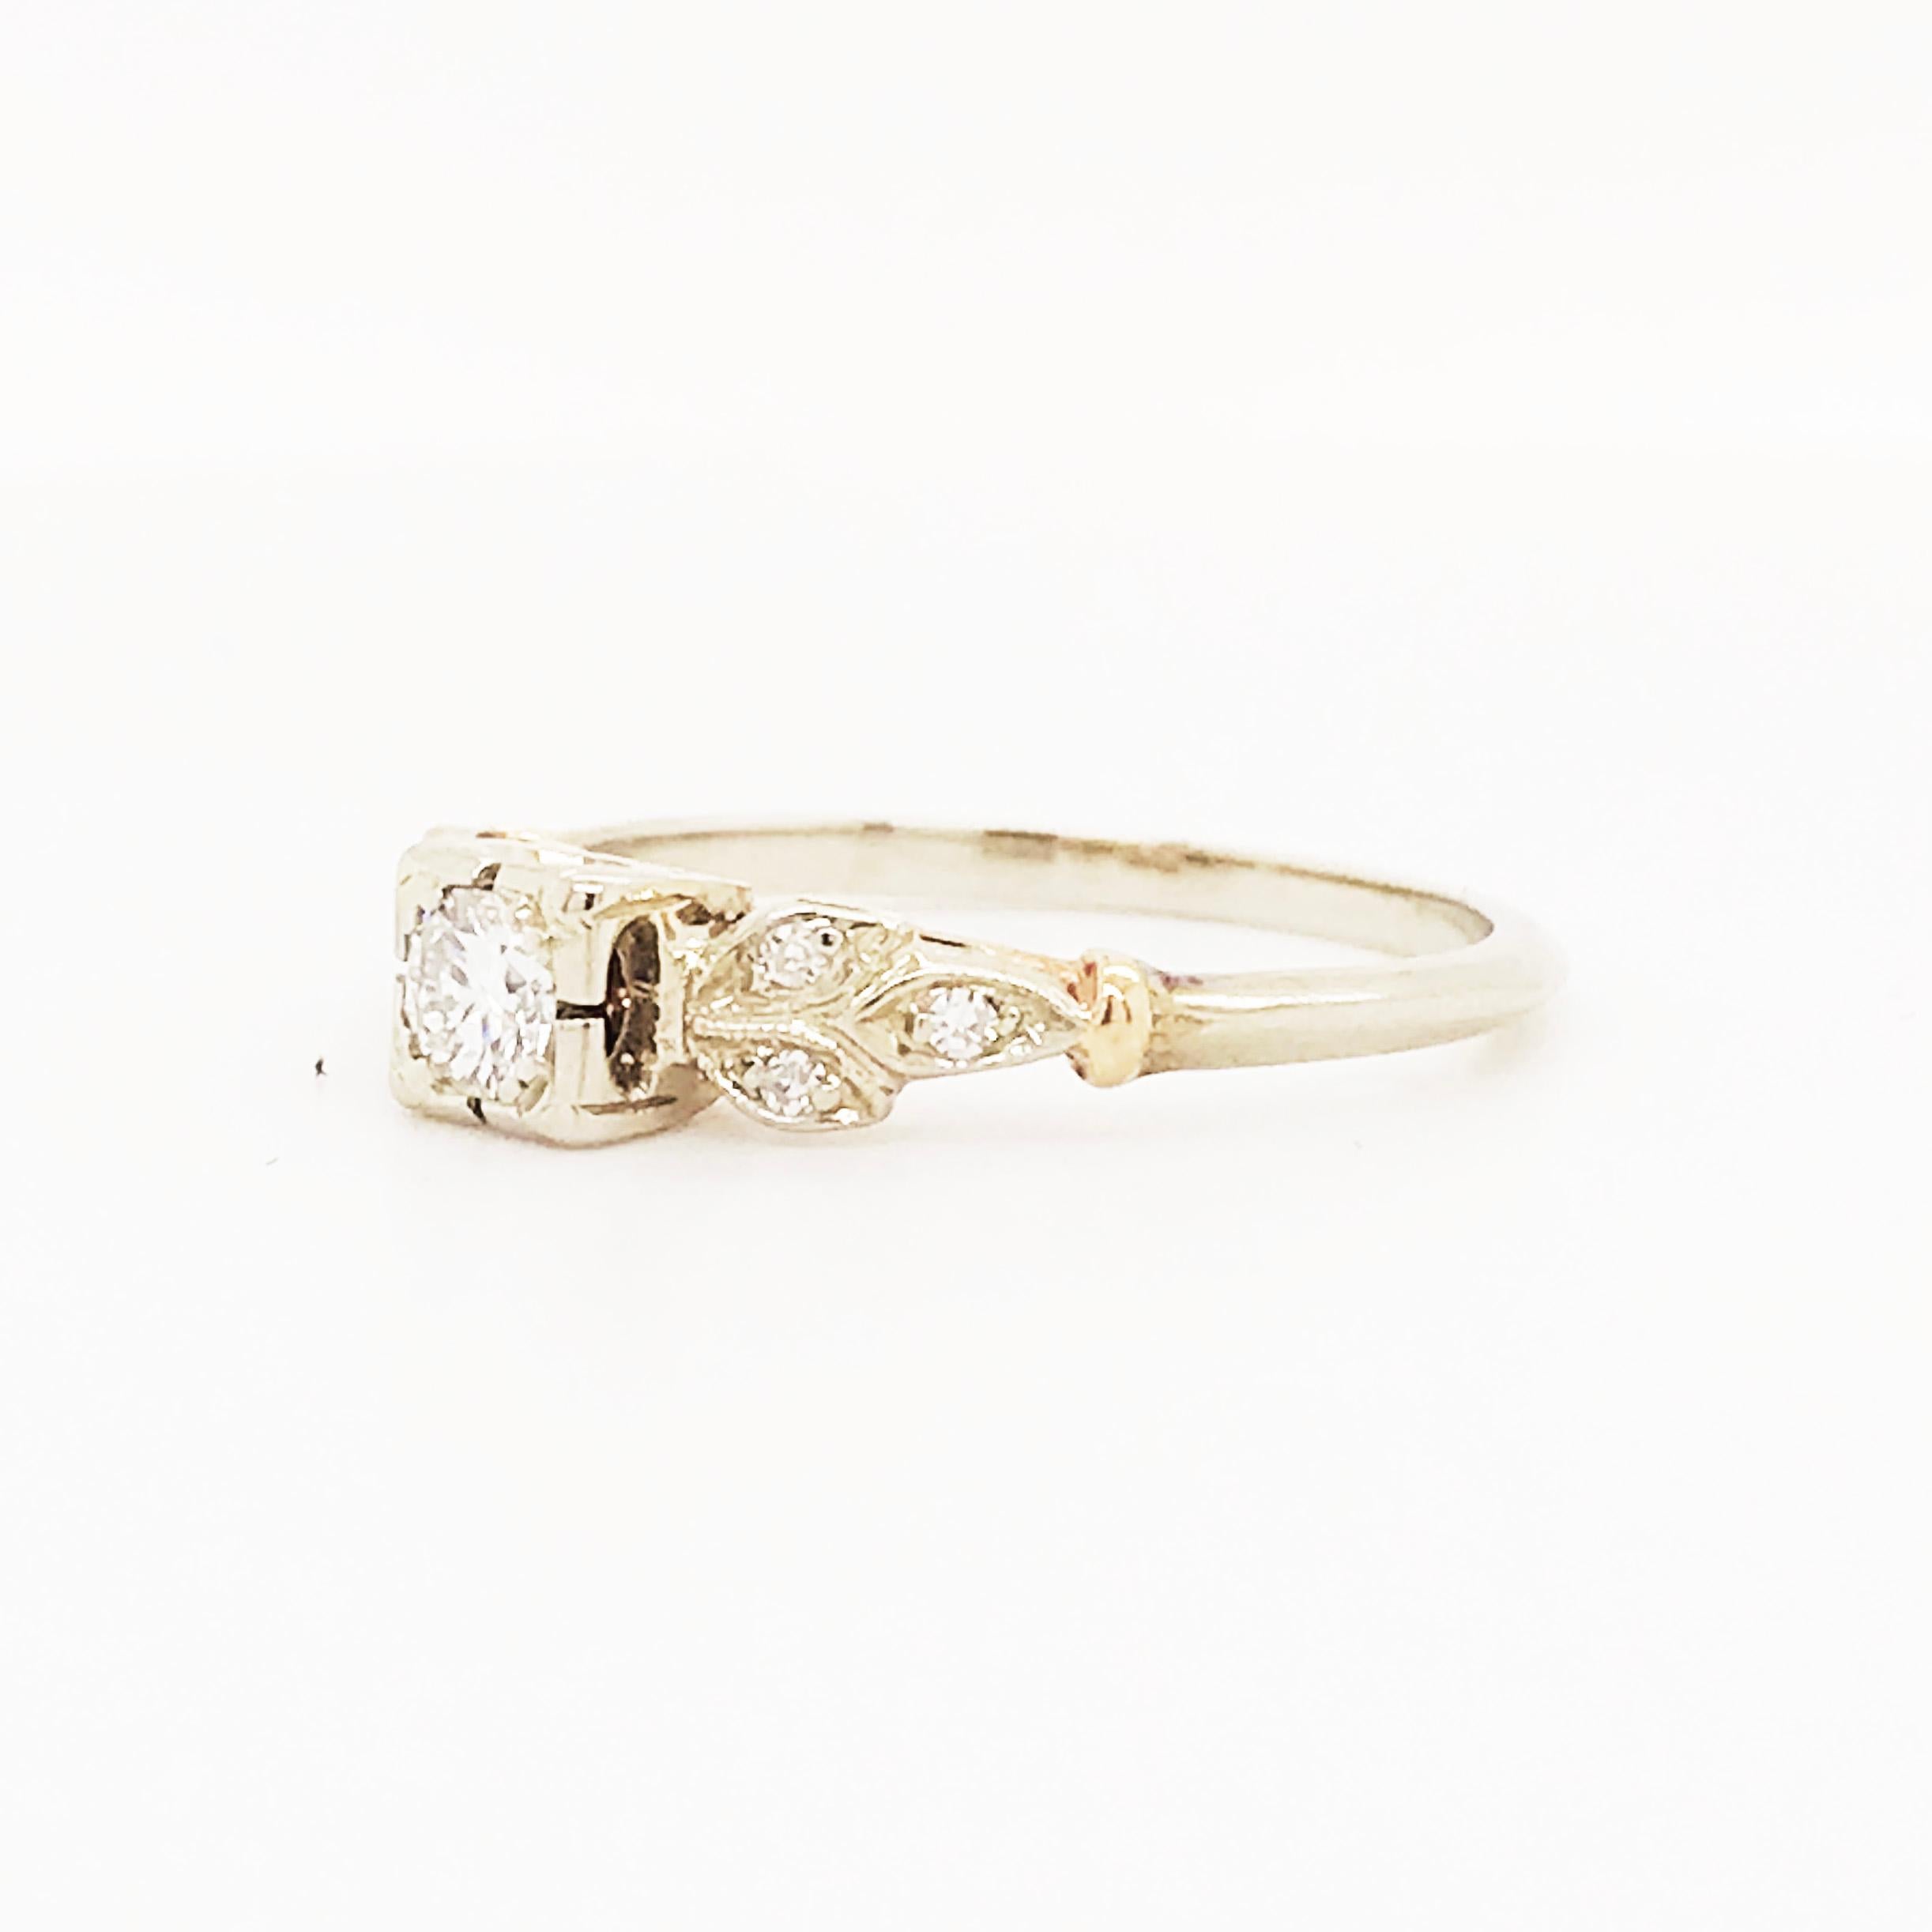 Diamond Estate Ring 14 Karat White and Yellow Gold Vintage Ring, circa 1940 1